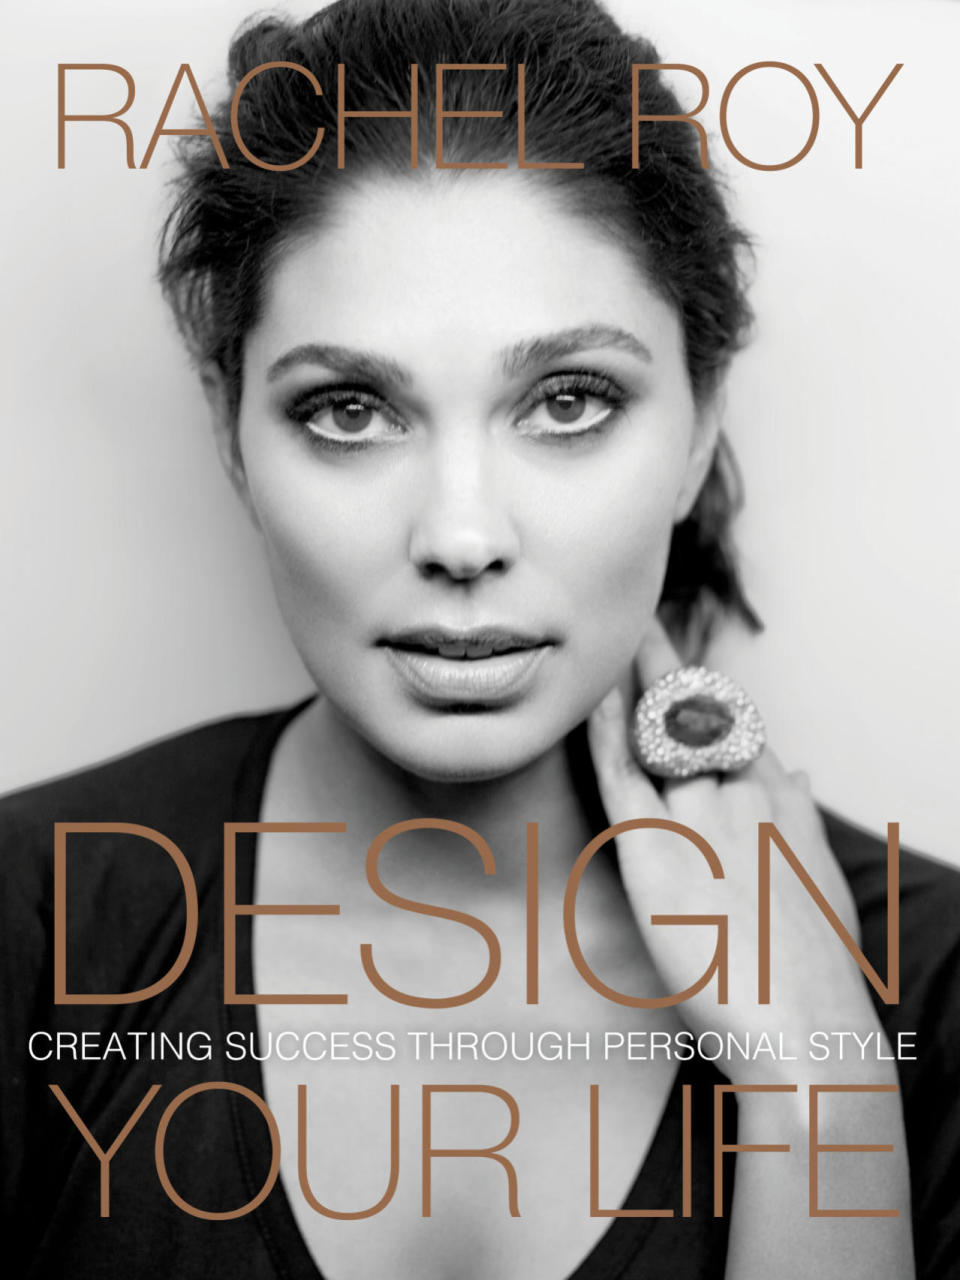 Rachel Roy’s new book “Design Your Life.” 